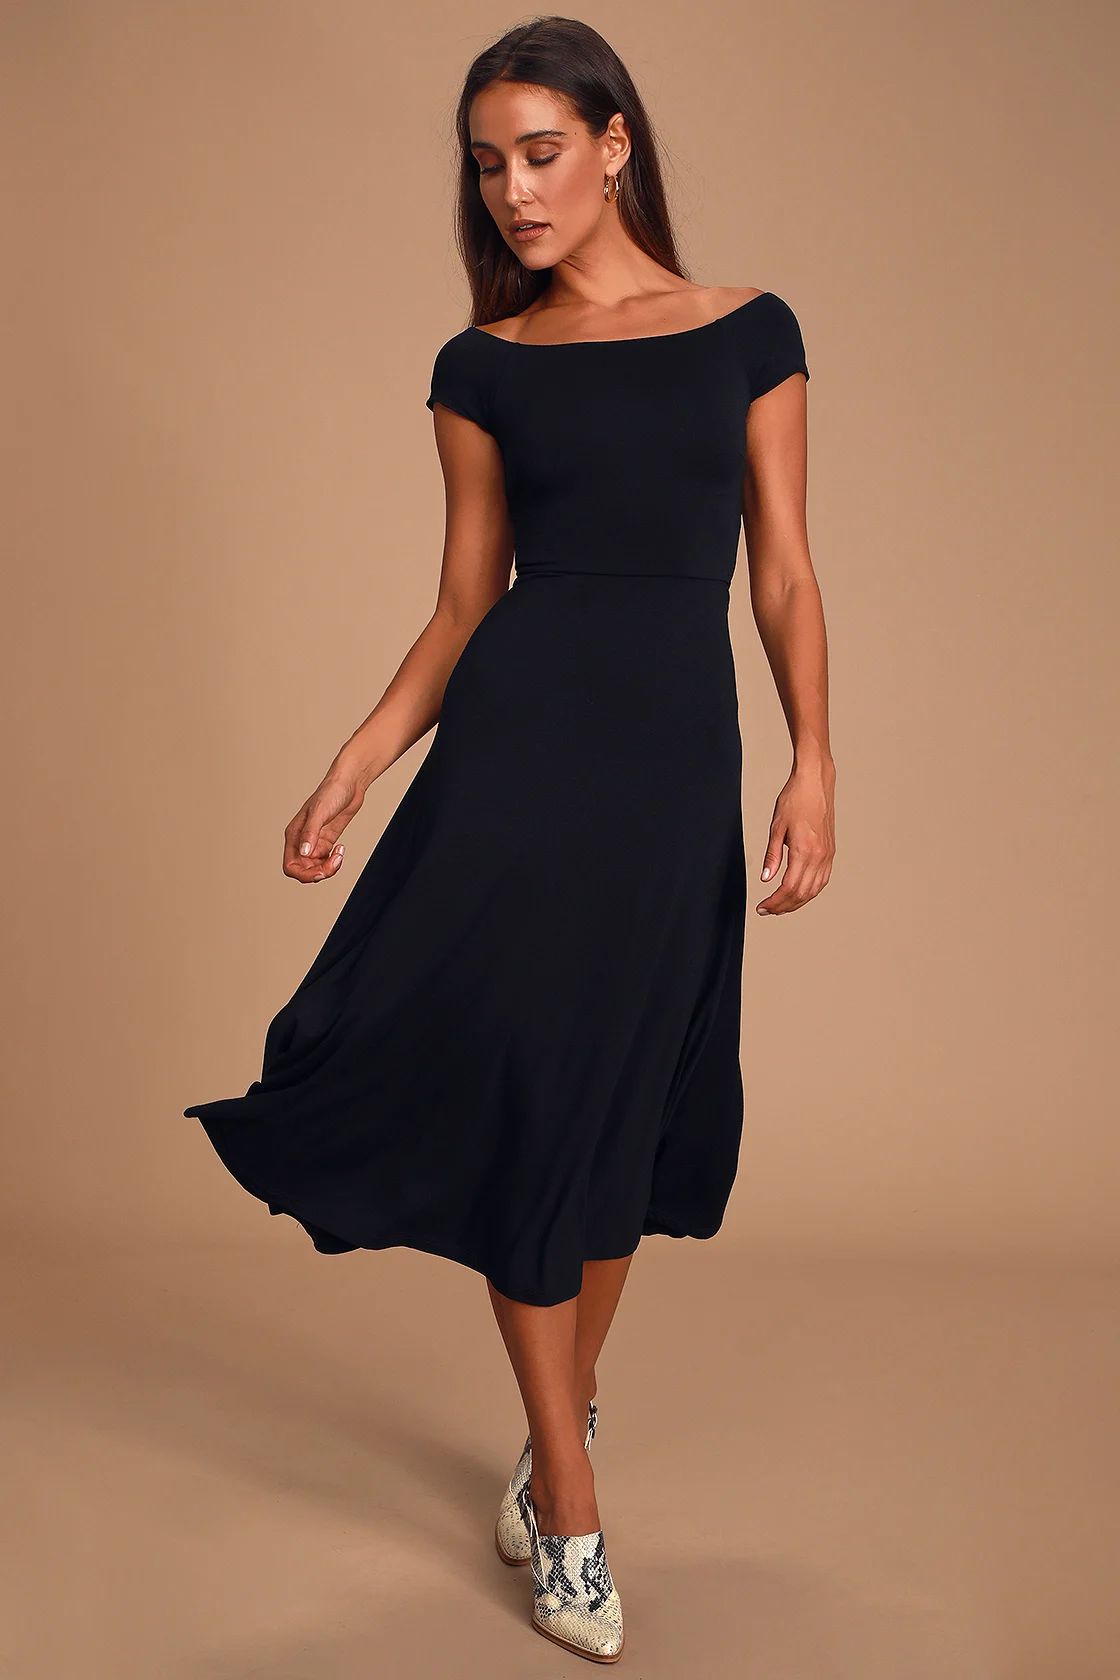 A La Mode Black Midi Dress | Lulus (US)